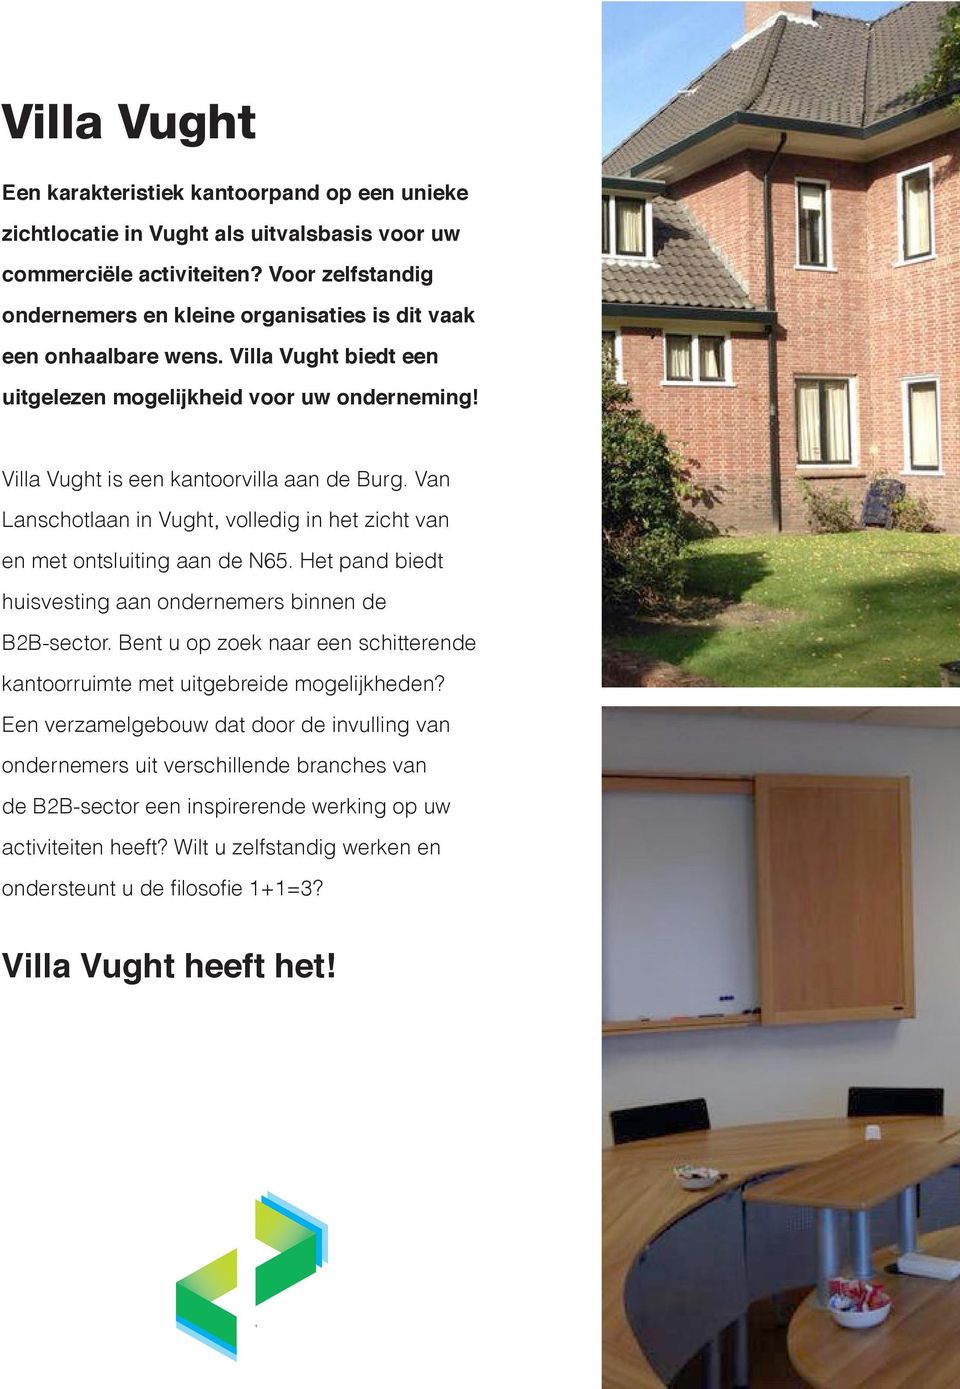 Van Lanschotlaan in Vught, volledig in het zicht van en met ontsluiting aan de N65. Het pand biedt huisvesting aan ondernemers binnen de B2B-sector.